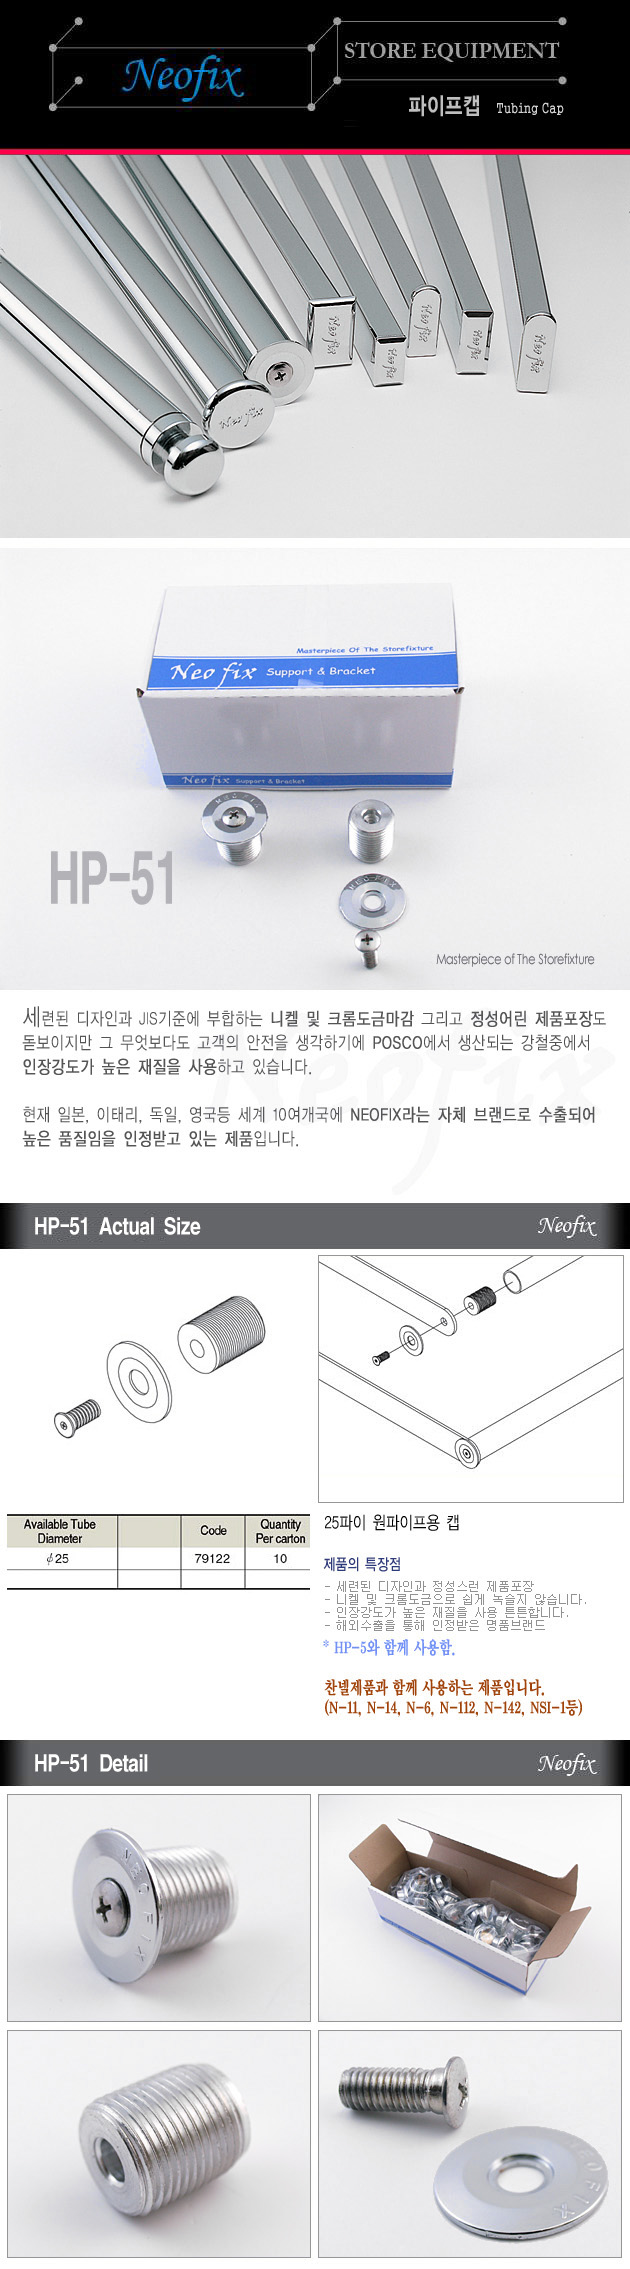 HP-51